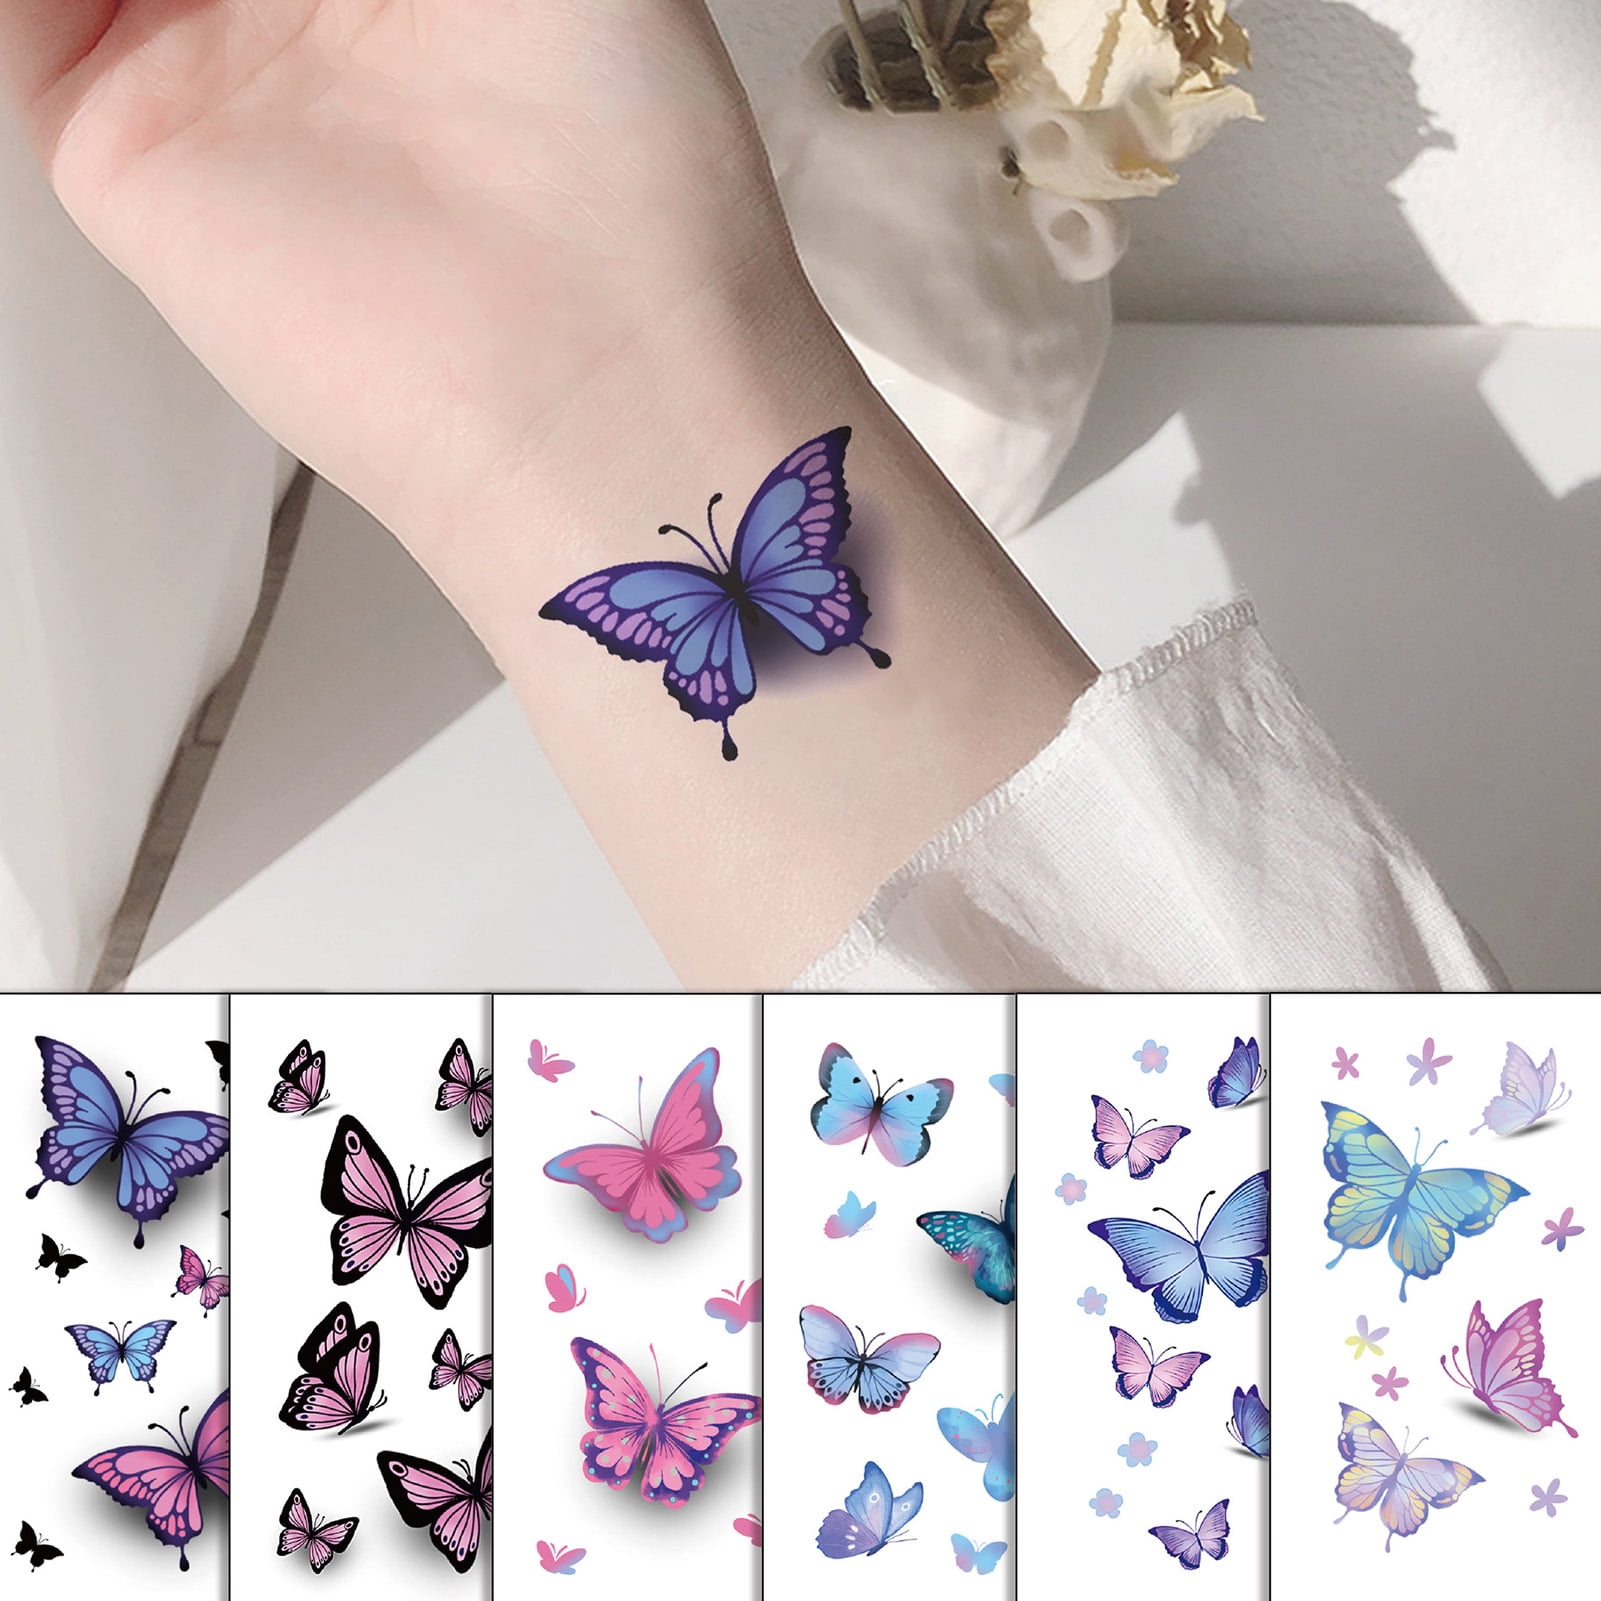 54 Divine Butterfly Wrist Tattoos Design  Tattoo Designs  TattoosBagcom